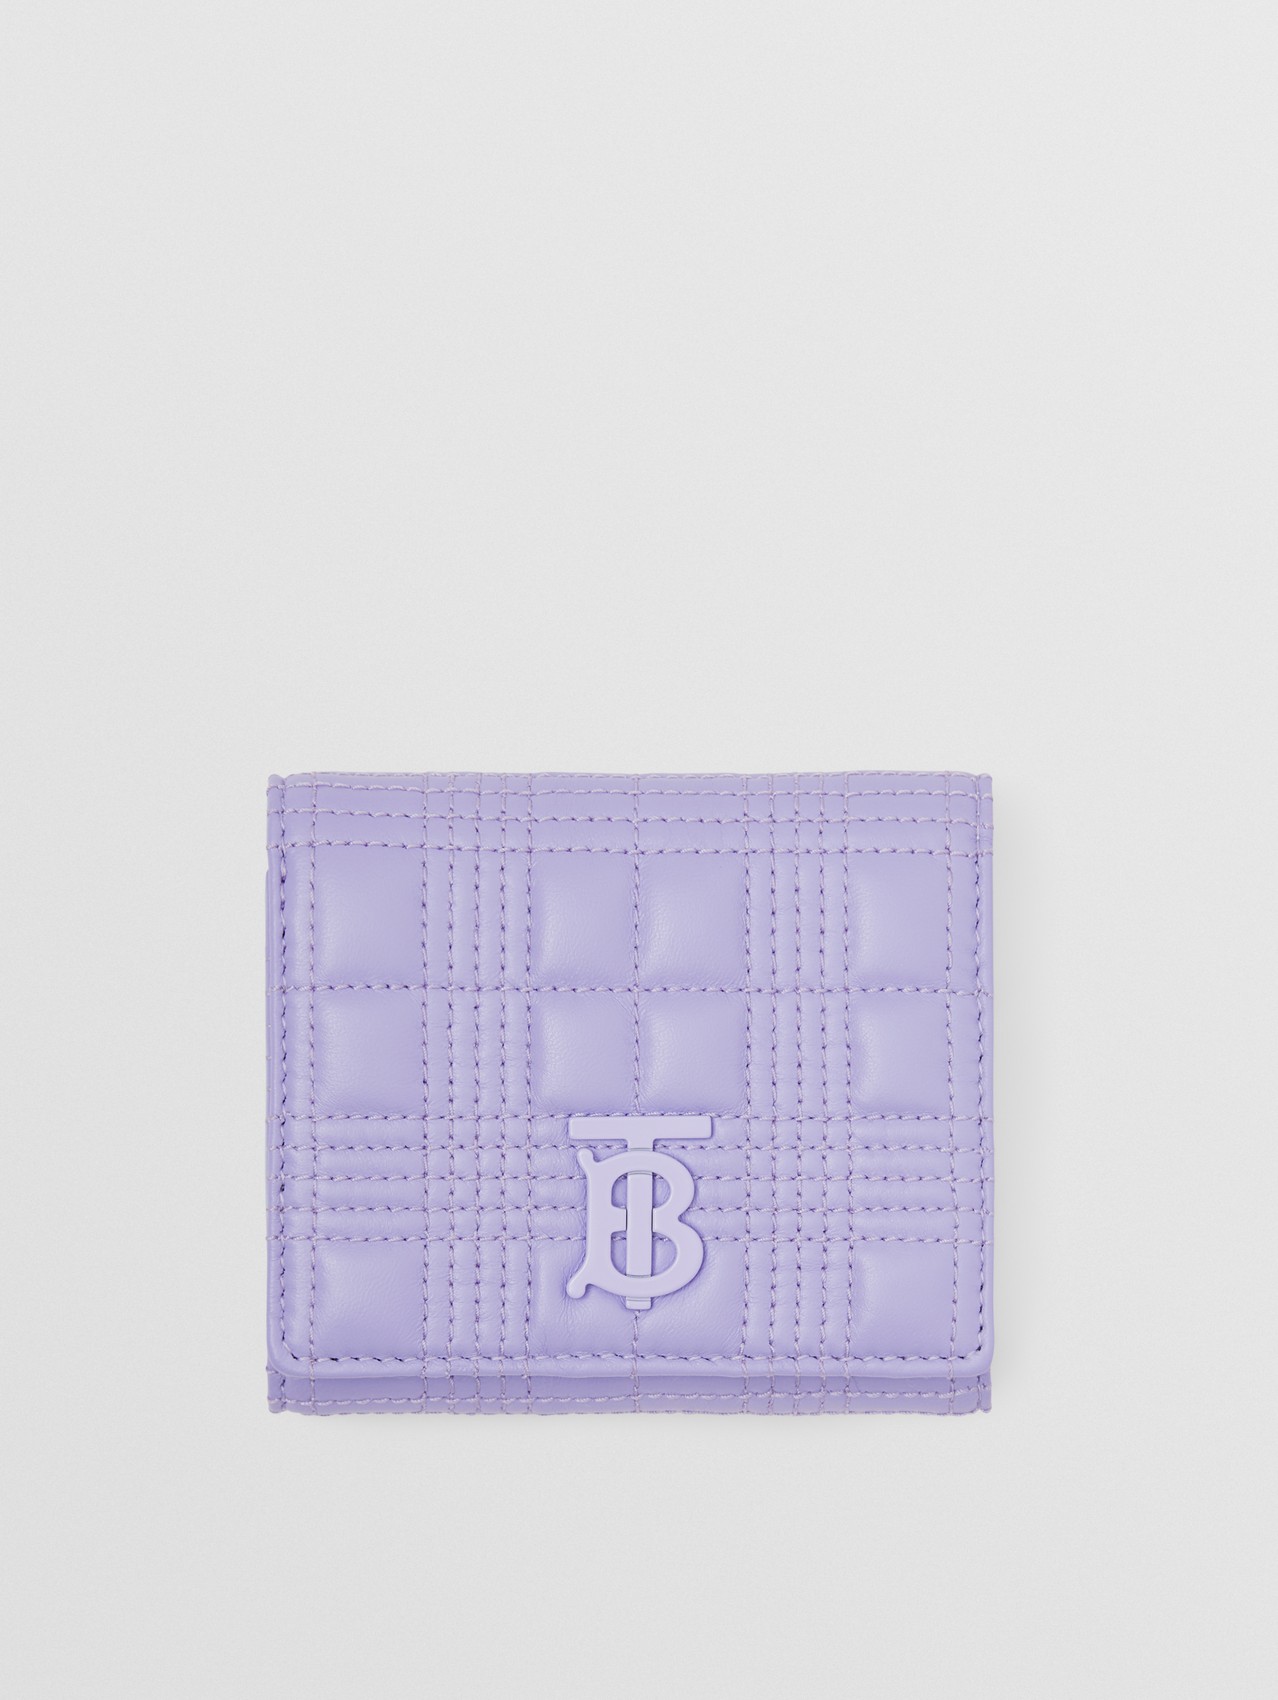 Складной бумажник Lola из кожи ягненка, компактный размер in Нежно-фиолетовый